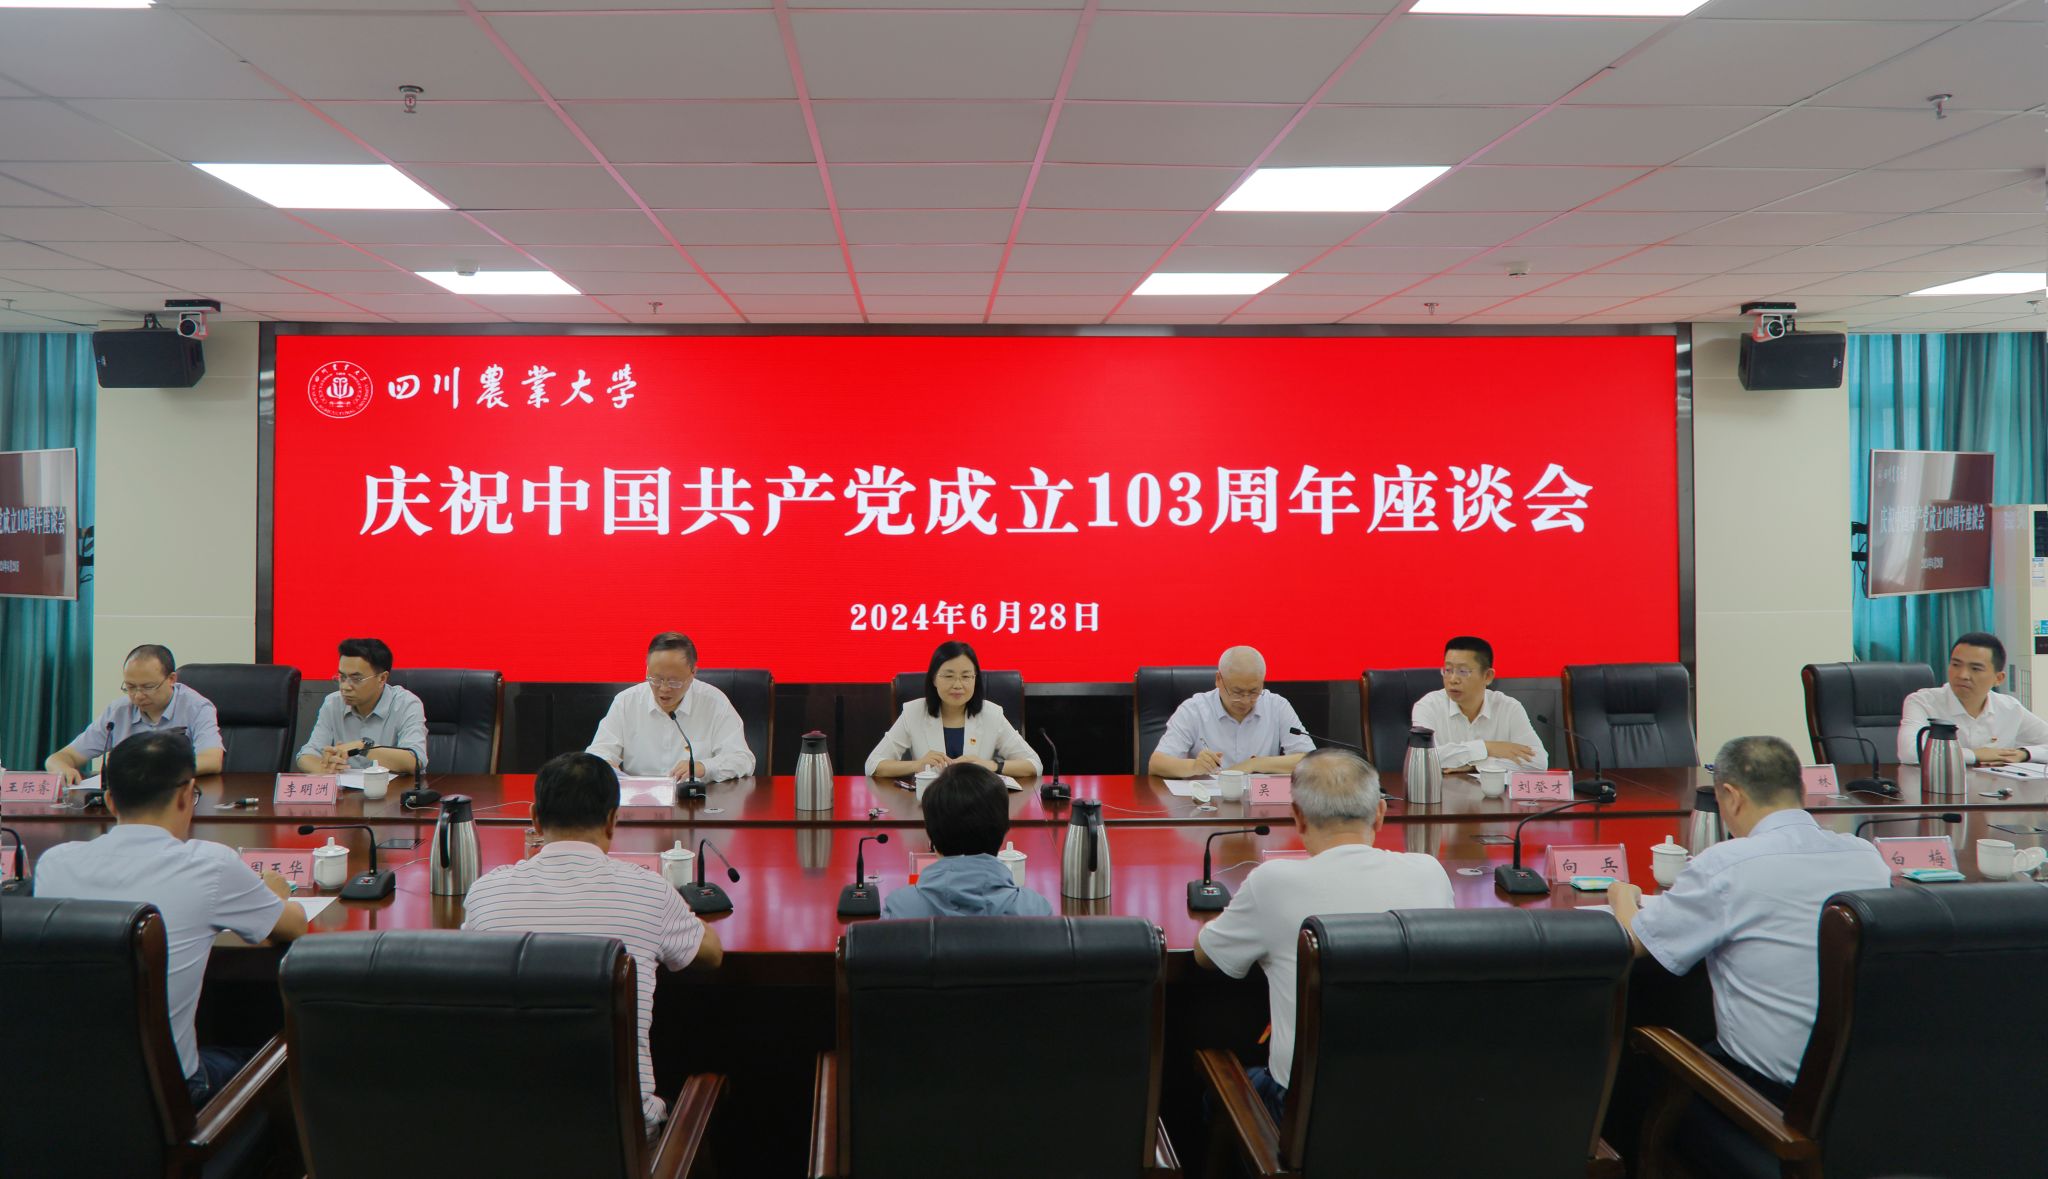 学校隆重召开庆祝中国共产党成立103周年座谈会